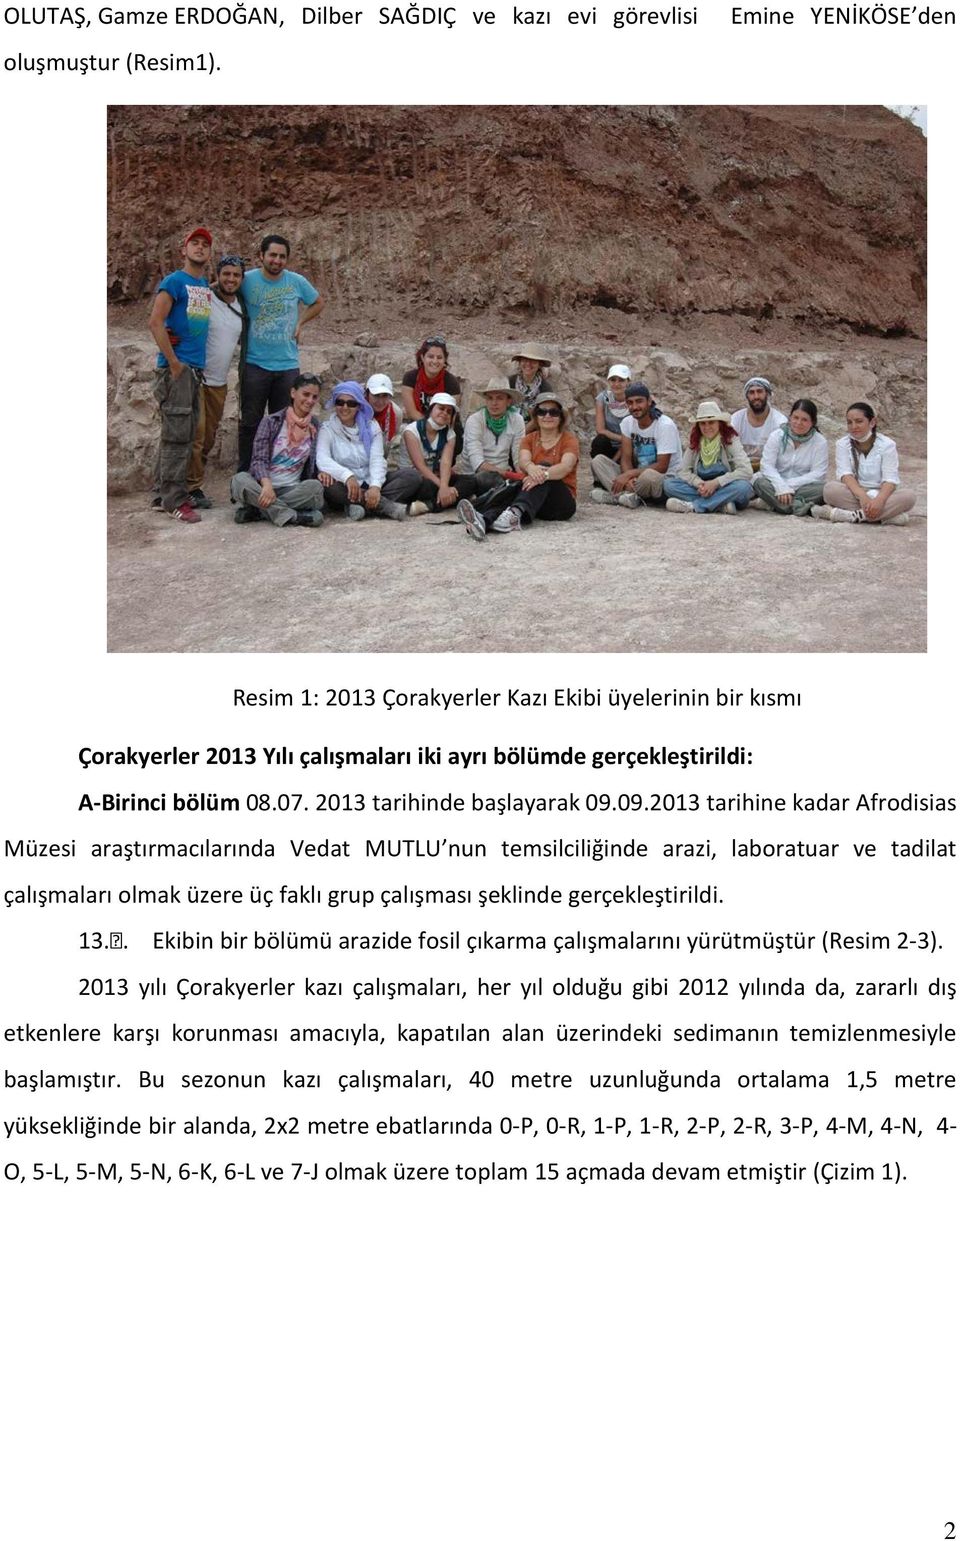 09.2013 tarihine kadar Afrodisias Müzesi araştırmacılarında Vedat MUTLU nun temsilciliğinde arazi, laboratuar ve tadilat çalışmaları olmak üzere üç faklı grup çalışması şeklinde gerçekleştirildi. 13.